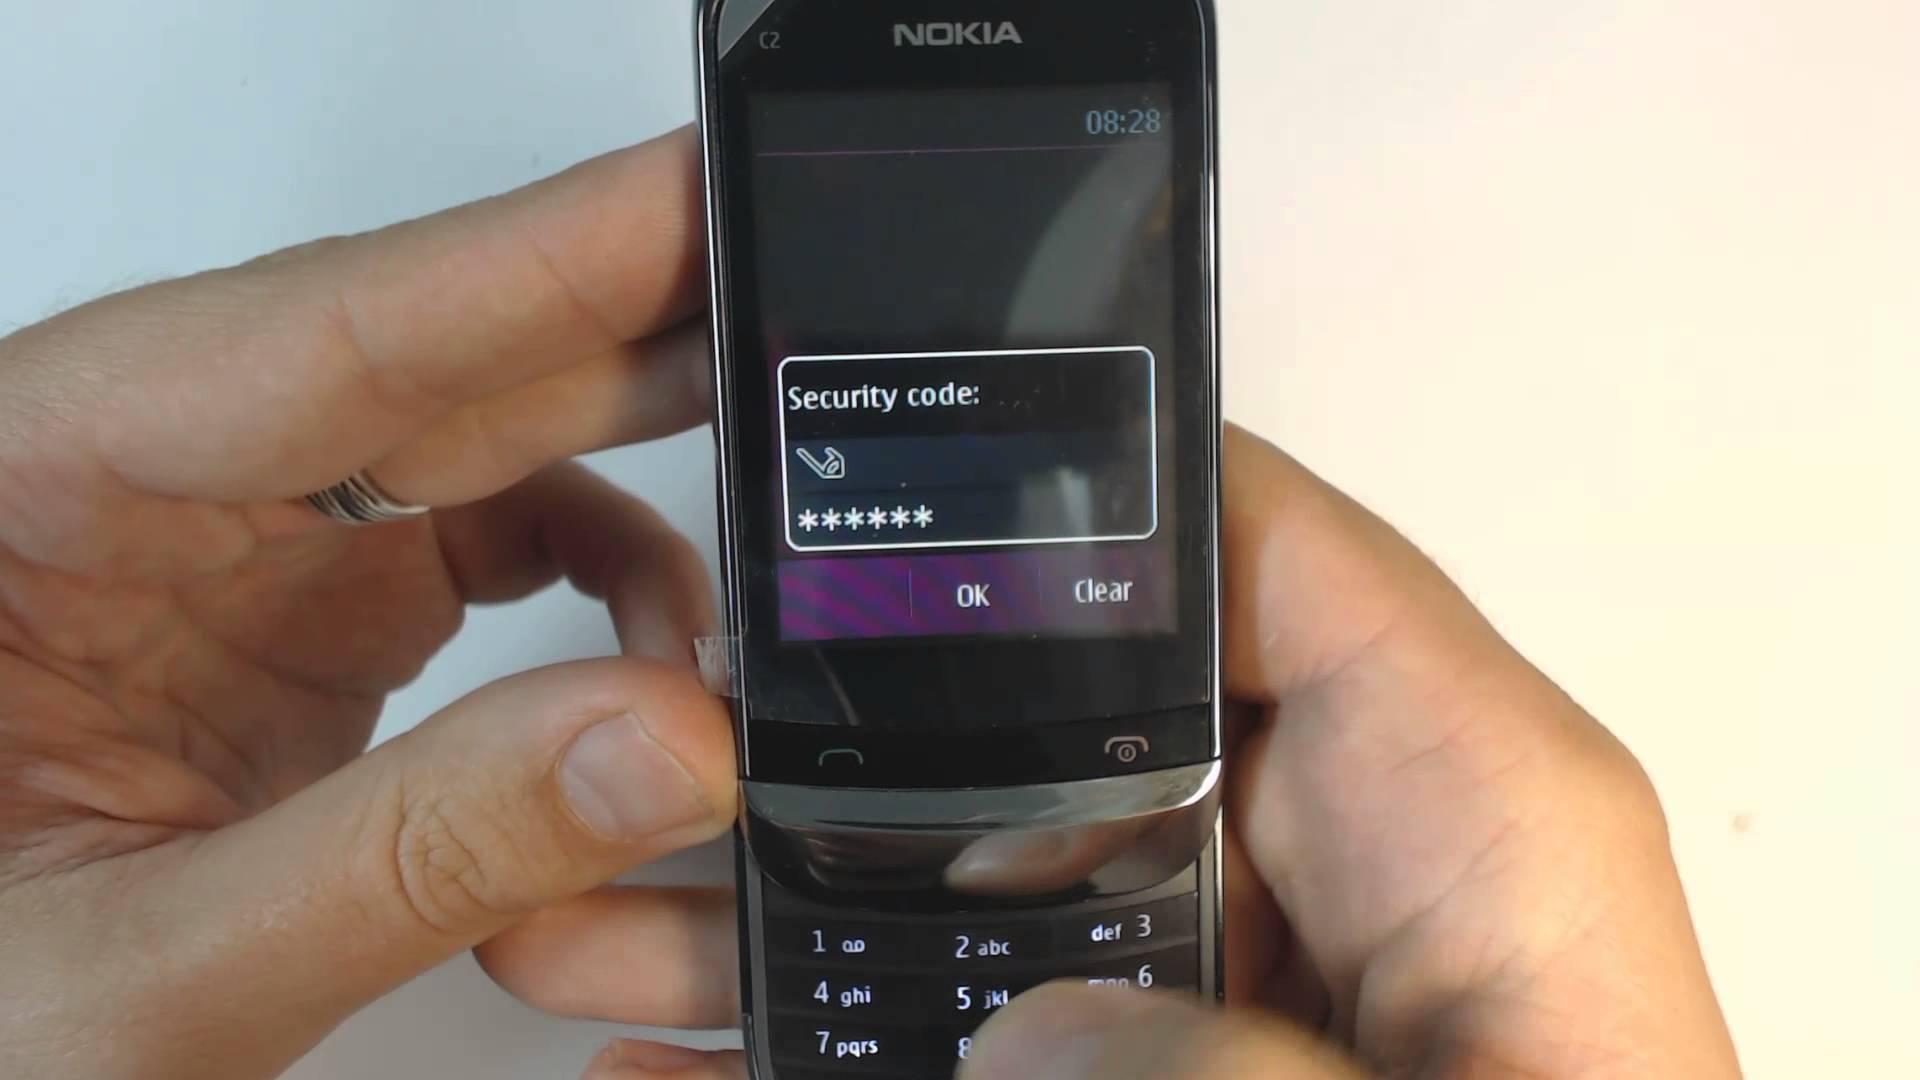 Телефон нокиа блокировка. Защитный код Nokia кнопочный 2 SIM. Защитный код нокиа кнопочный c2. Nokia c2ta-1204. Nokia 7210 защитный код.